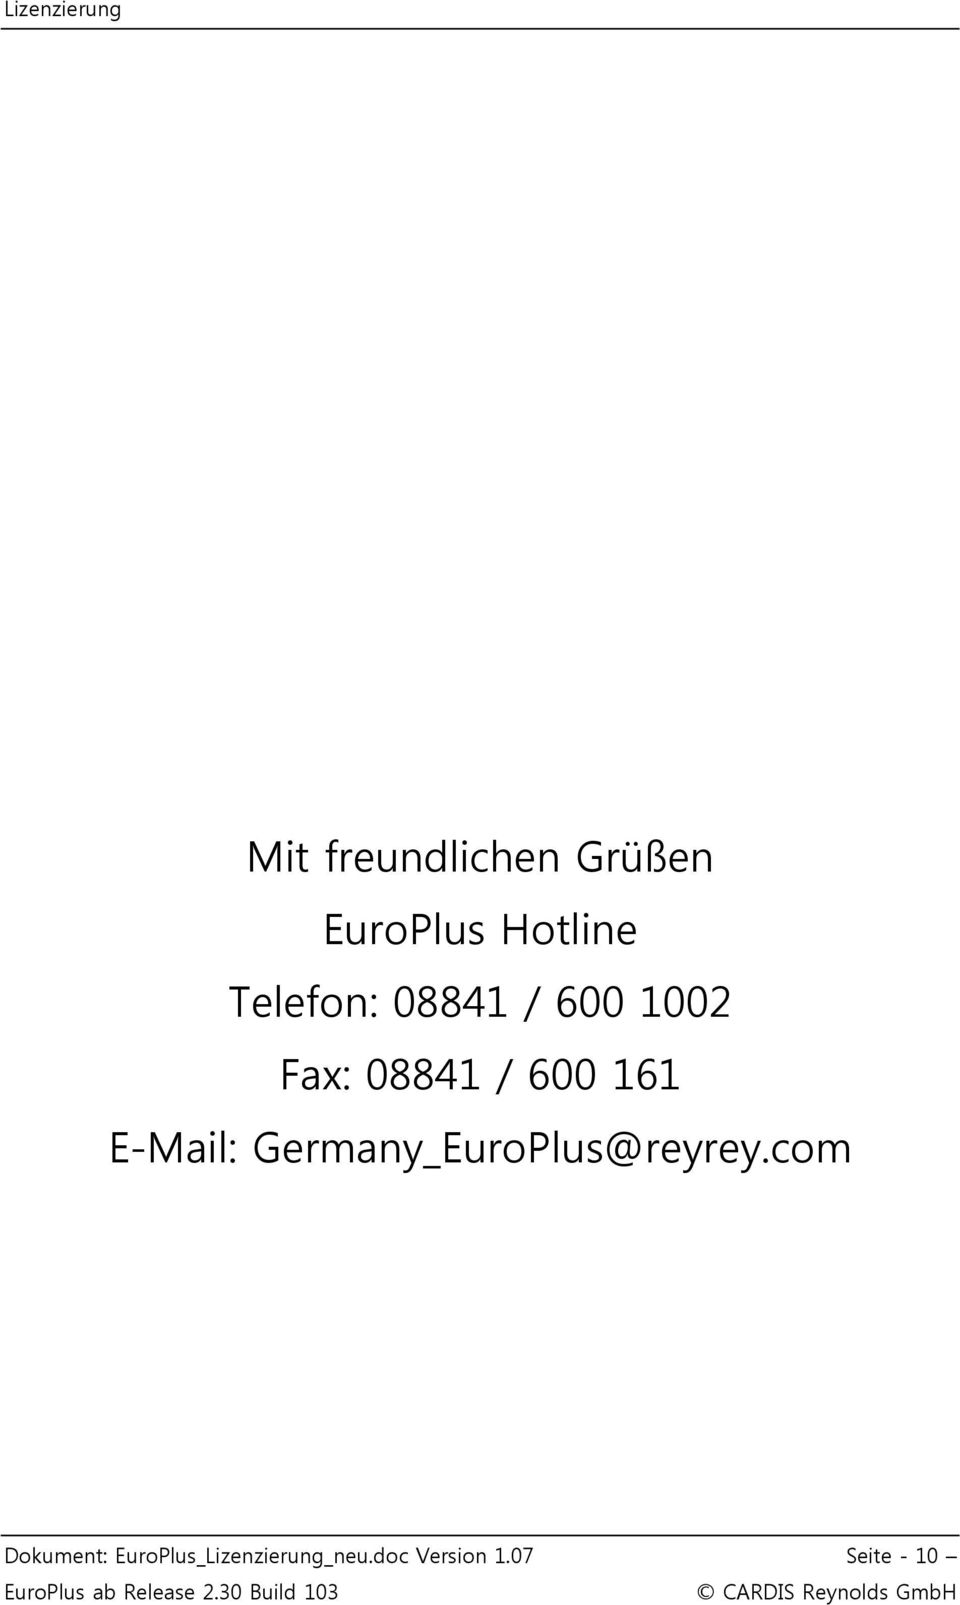 E-Mail: Germany_EuroPlus@reyrey.